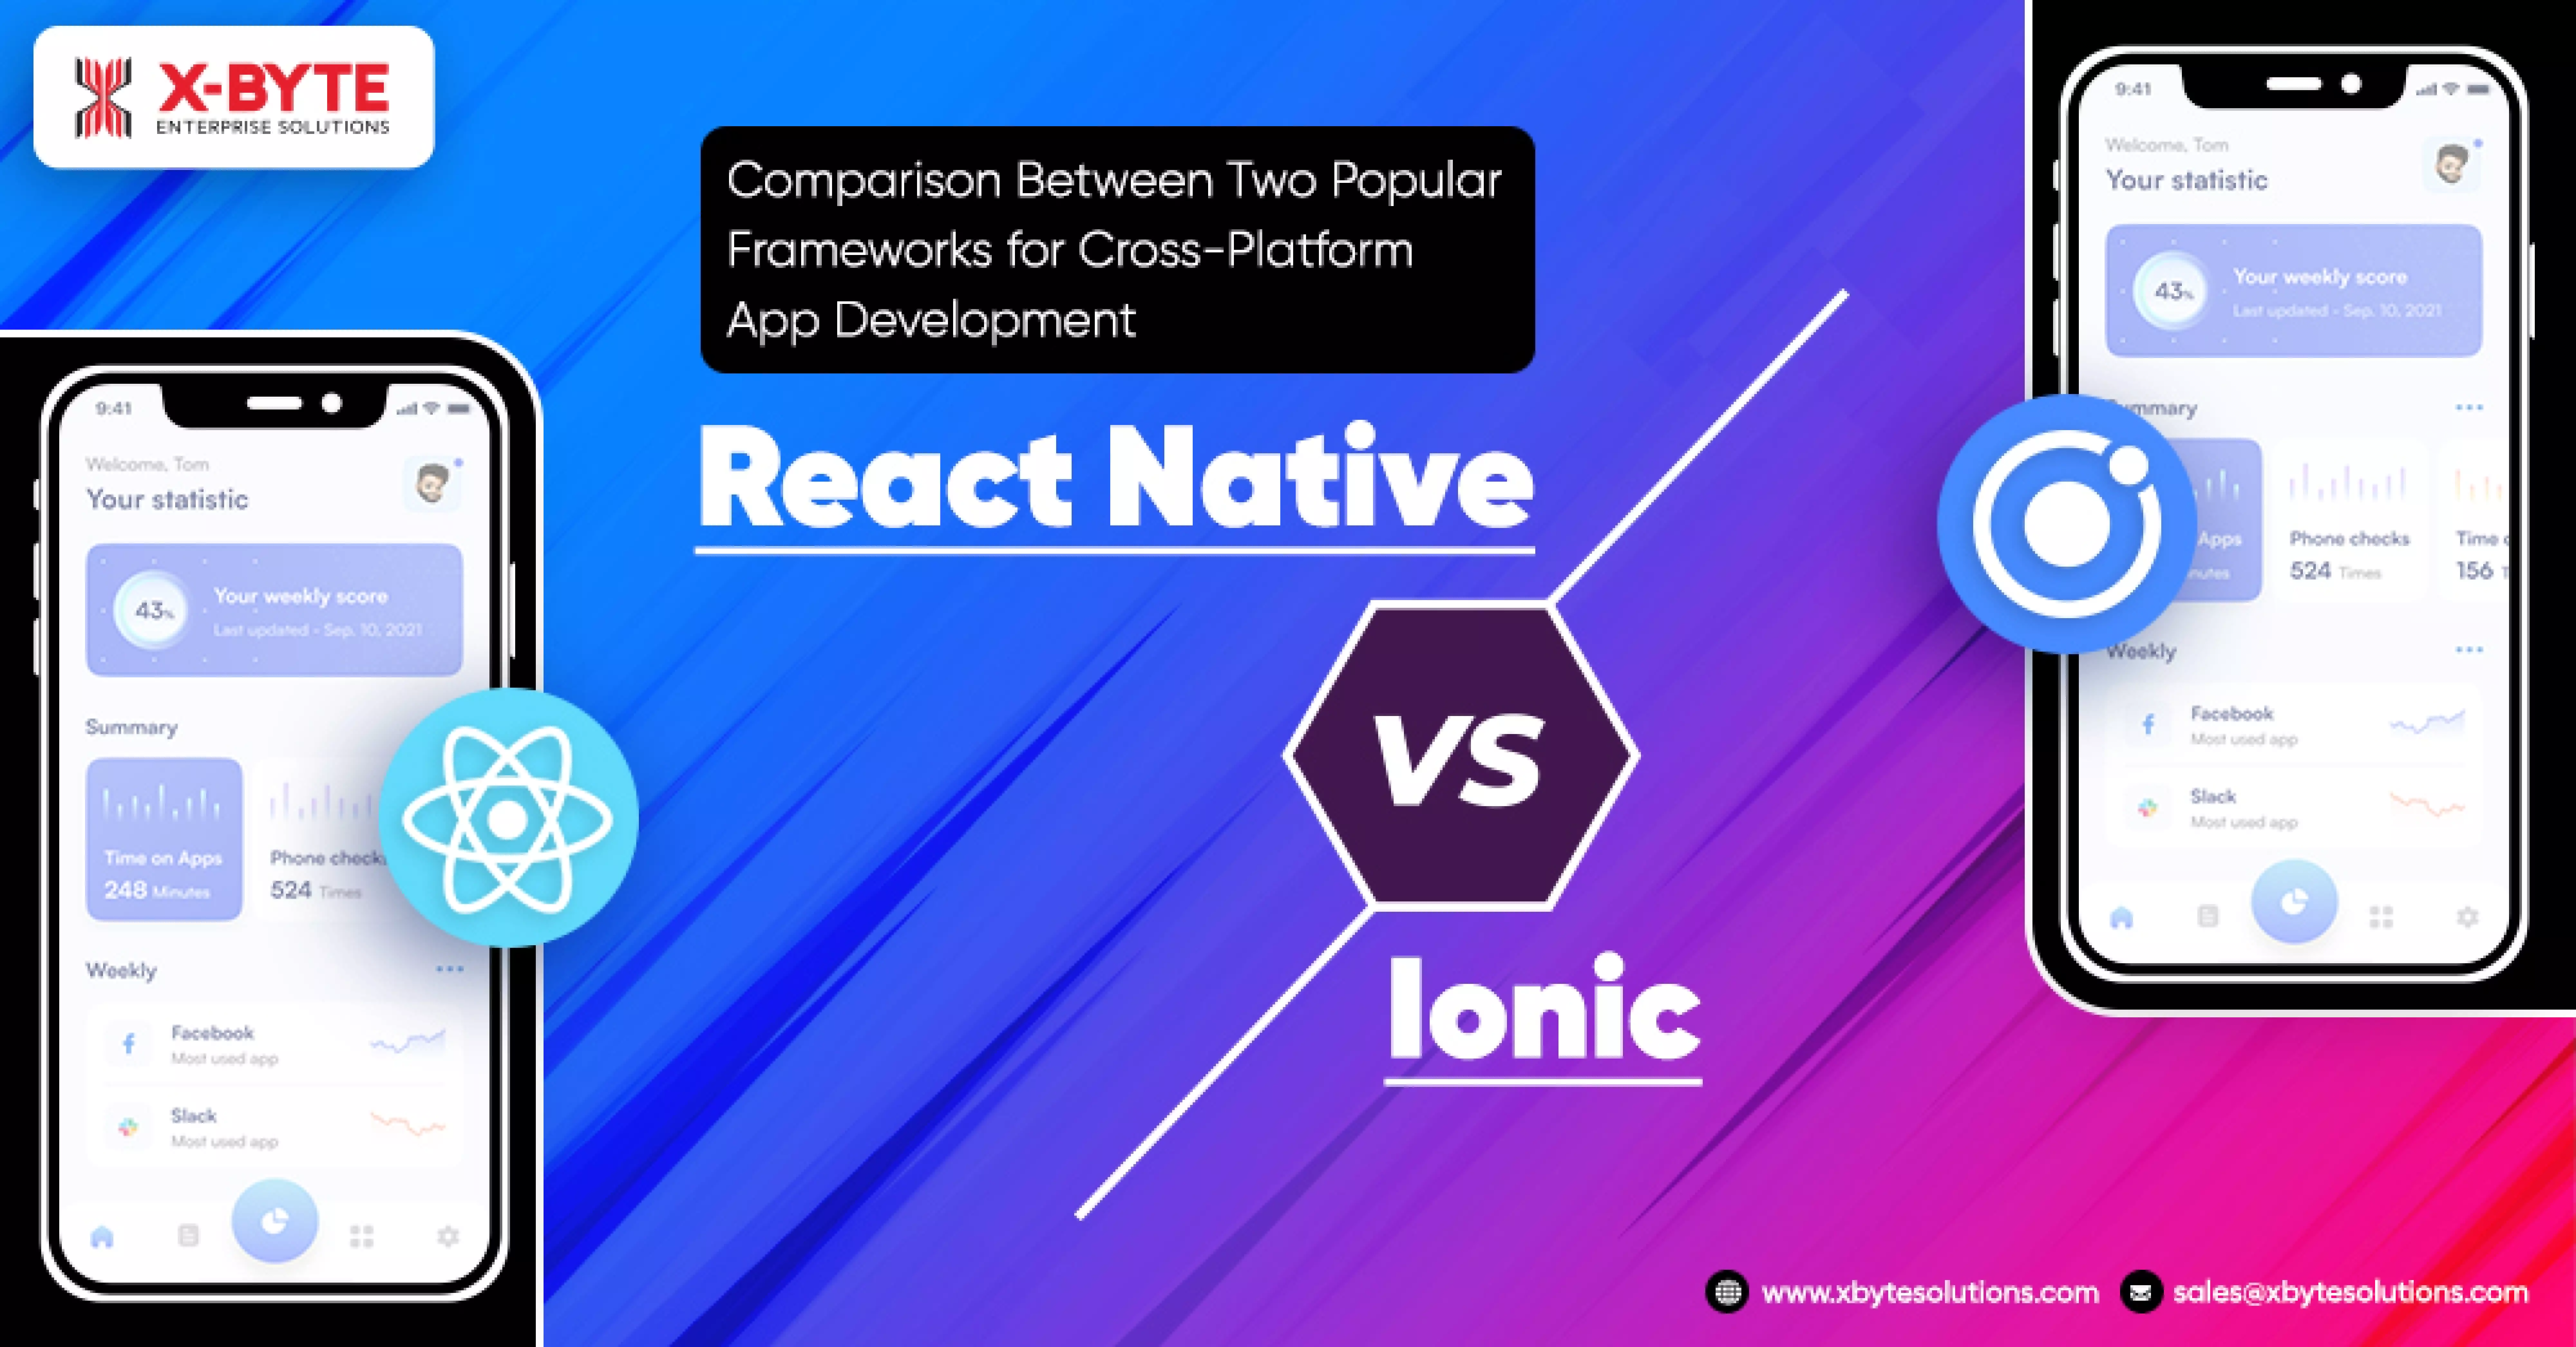 Comparison between two popular frameworks for Cross-Platform App